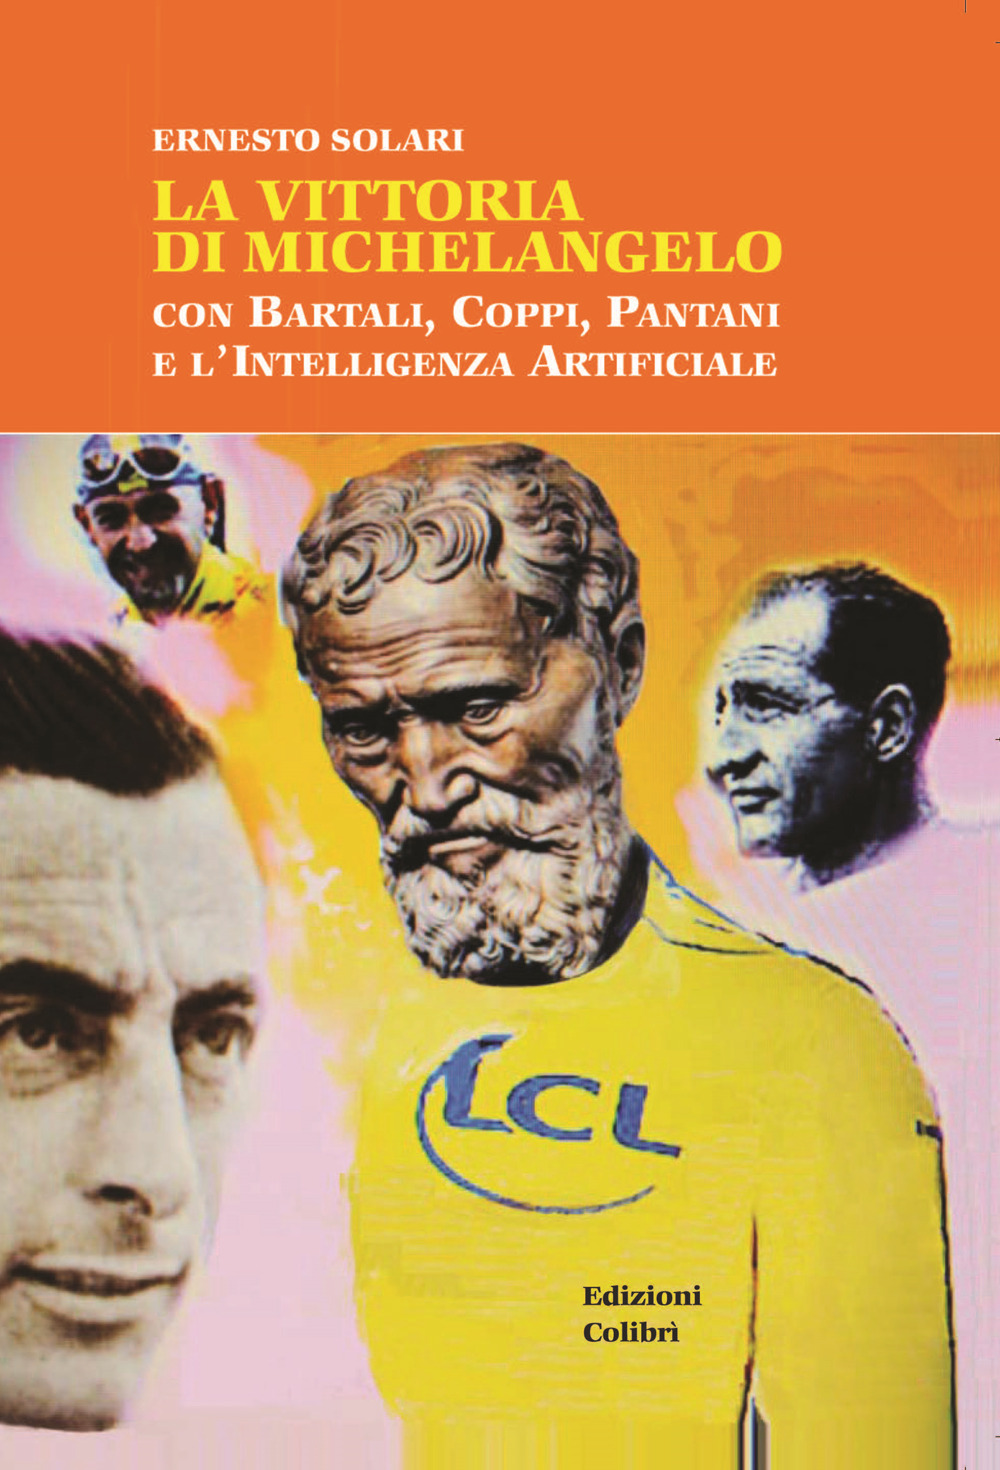 La vittoria di Michelangelo con Bartali, Coppi, Pantani e l'Intelligenza Artificiale